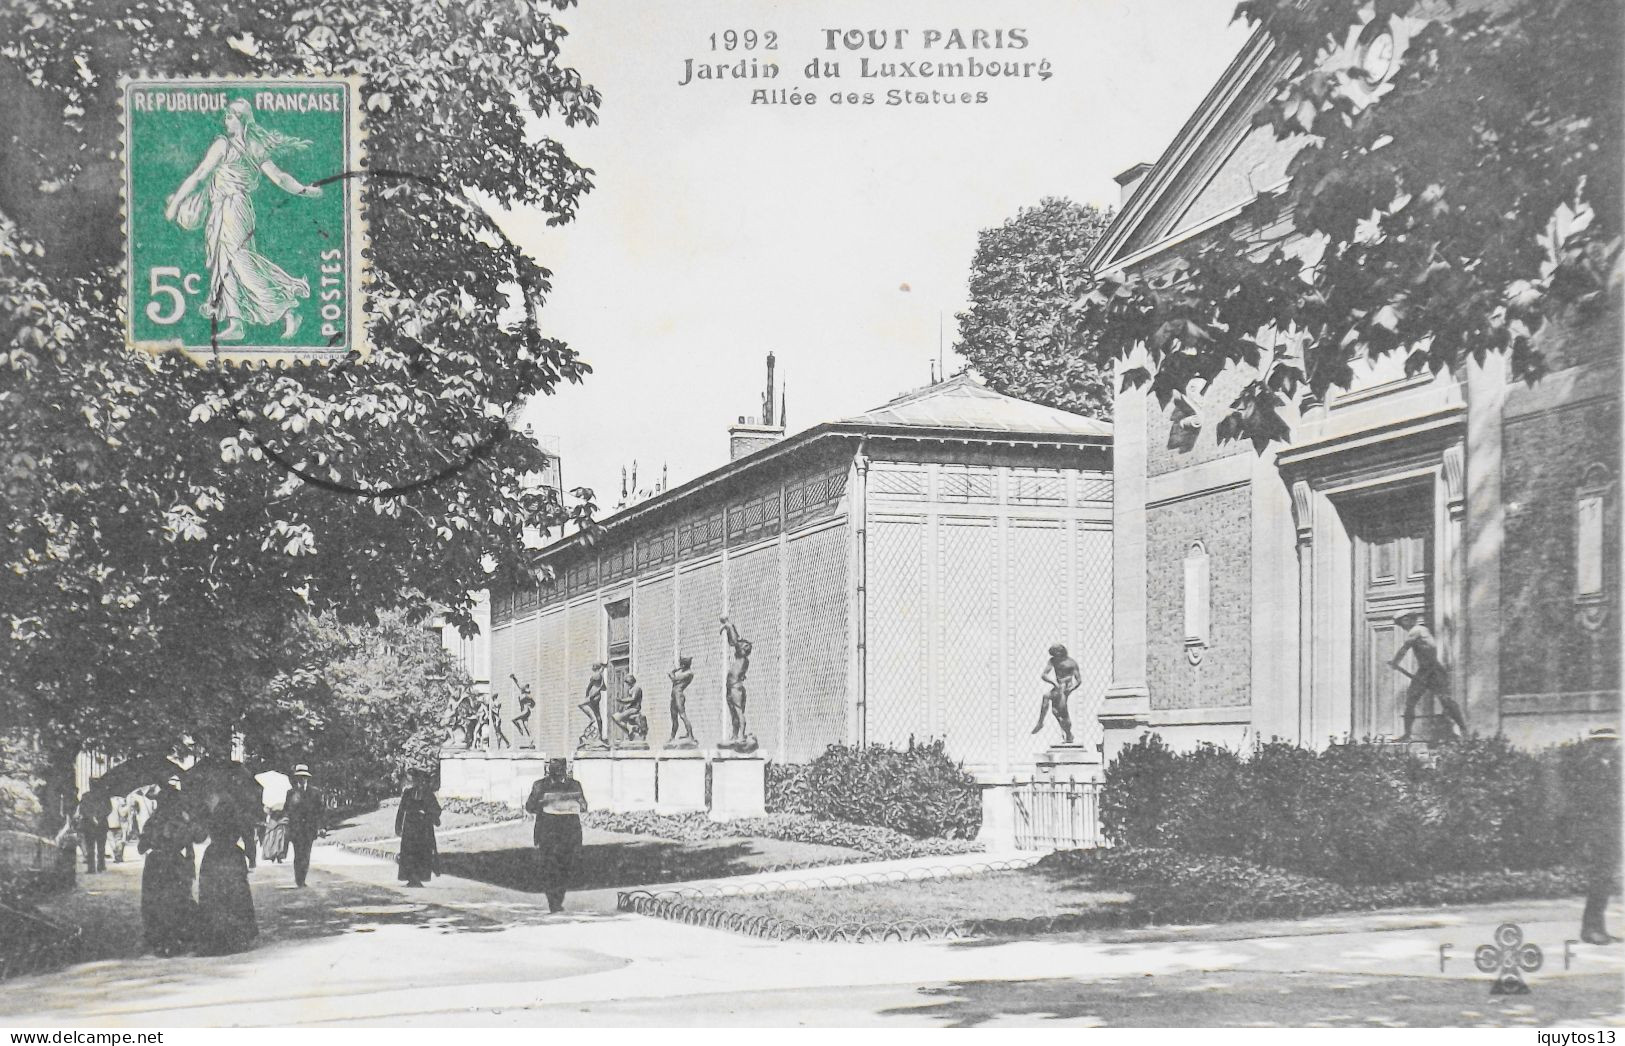 CPA. [75] > TOUT PARIS > N° 1992 - Jardin Du Luxembourg, Allée Des Statues - (VIe Arrt.) - 1911 - Coll. F. Fleury - TBE - Paris (06)